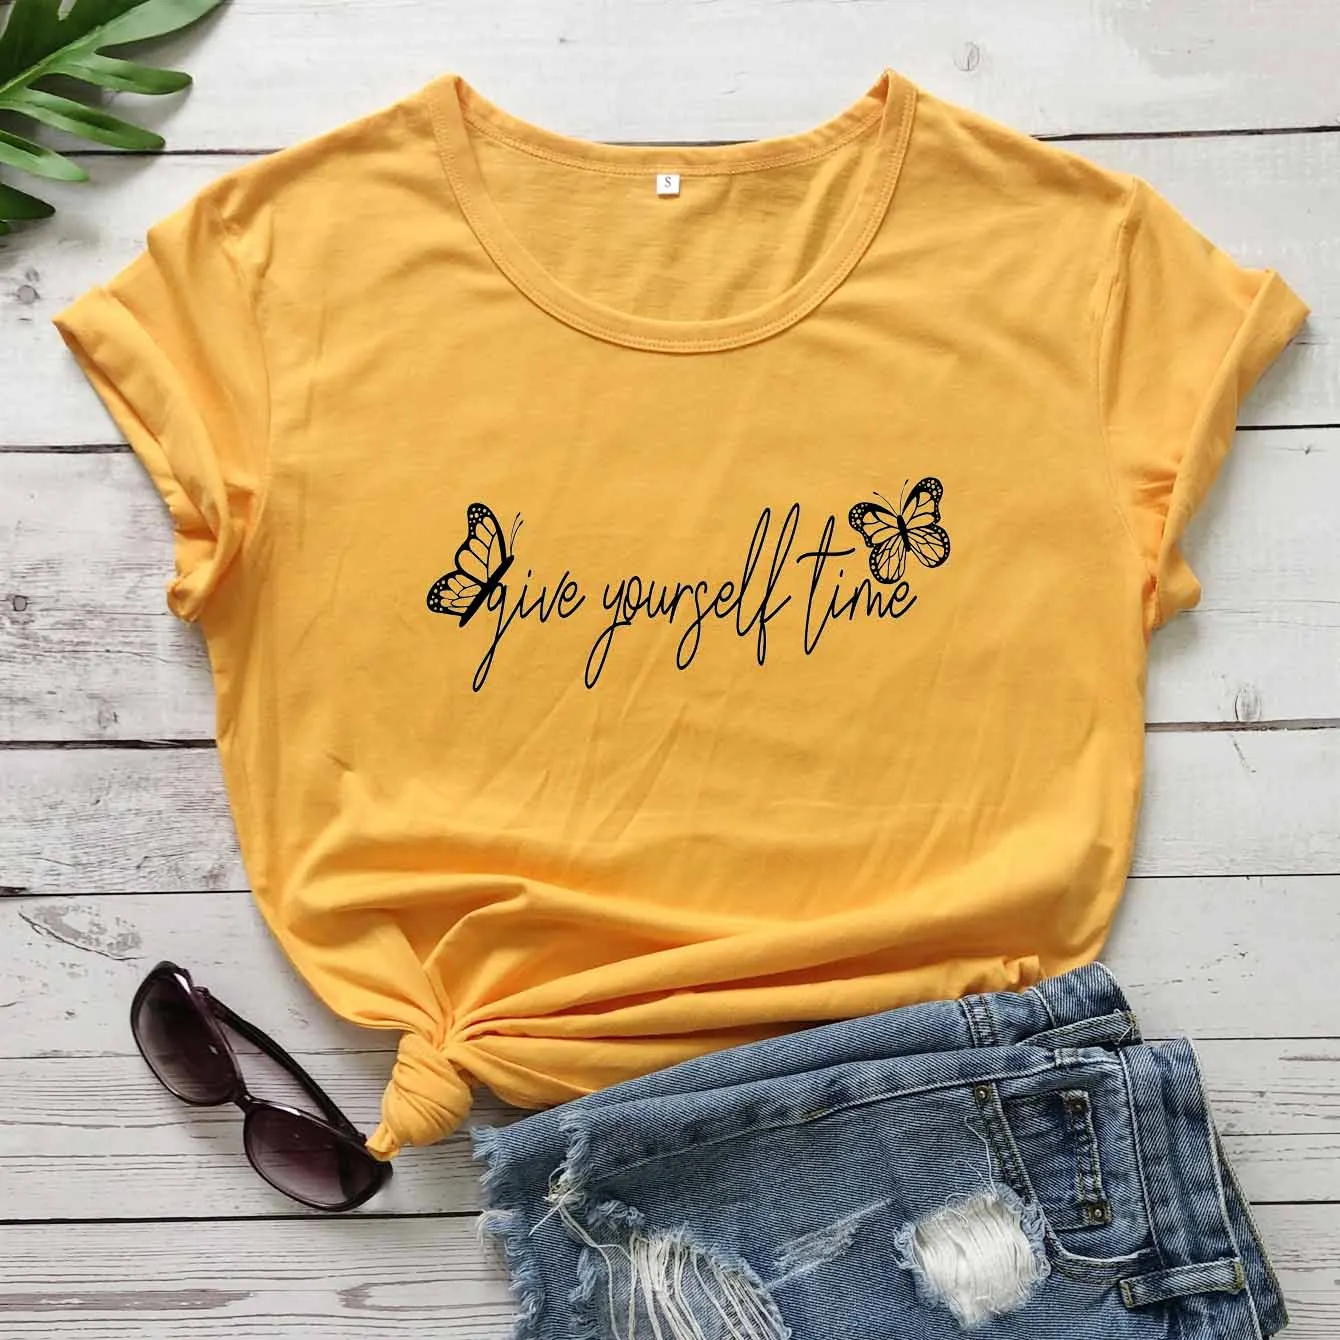 

Повседневная футболка с надписью «Дайте себе время», стиль унисекс, с бабочкой, из чистого хлопка, Молодежные хипстерские винтажные футболк...